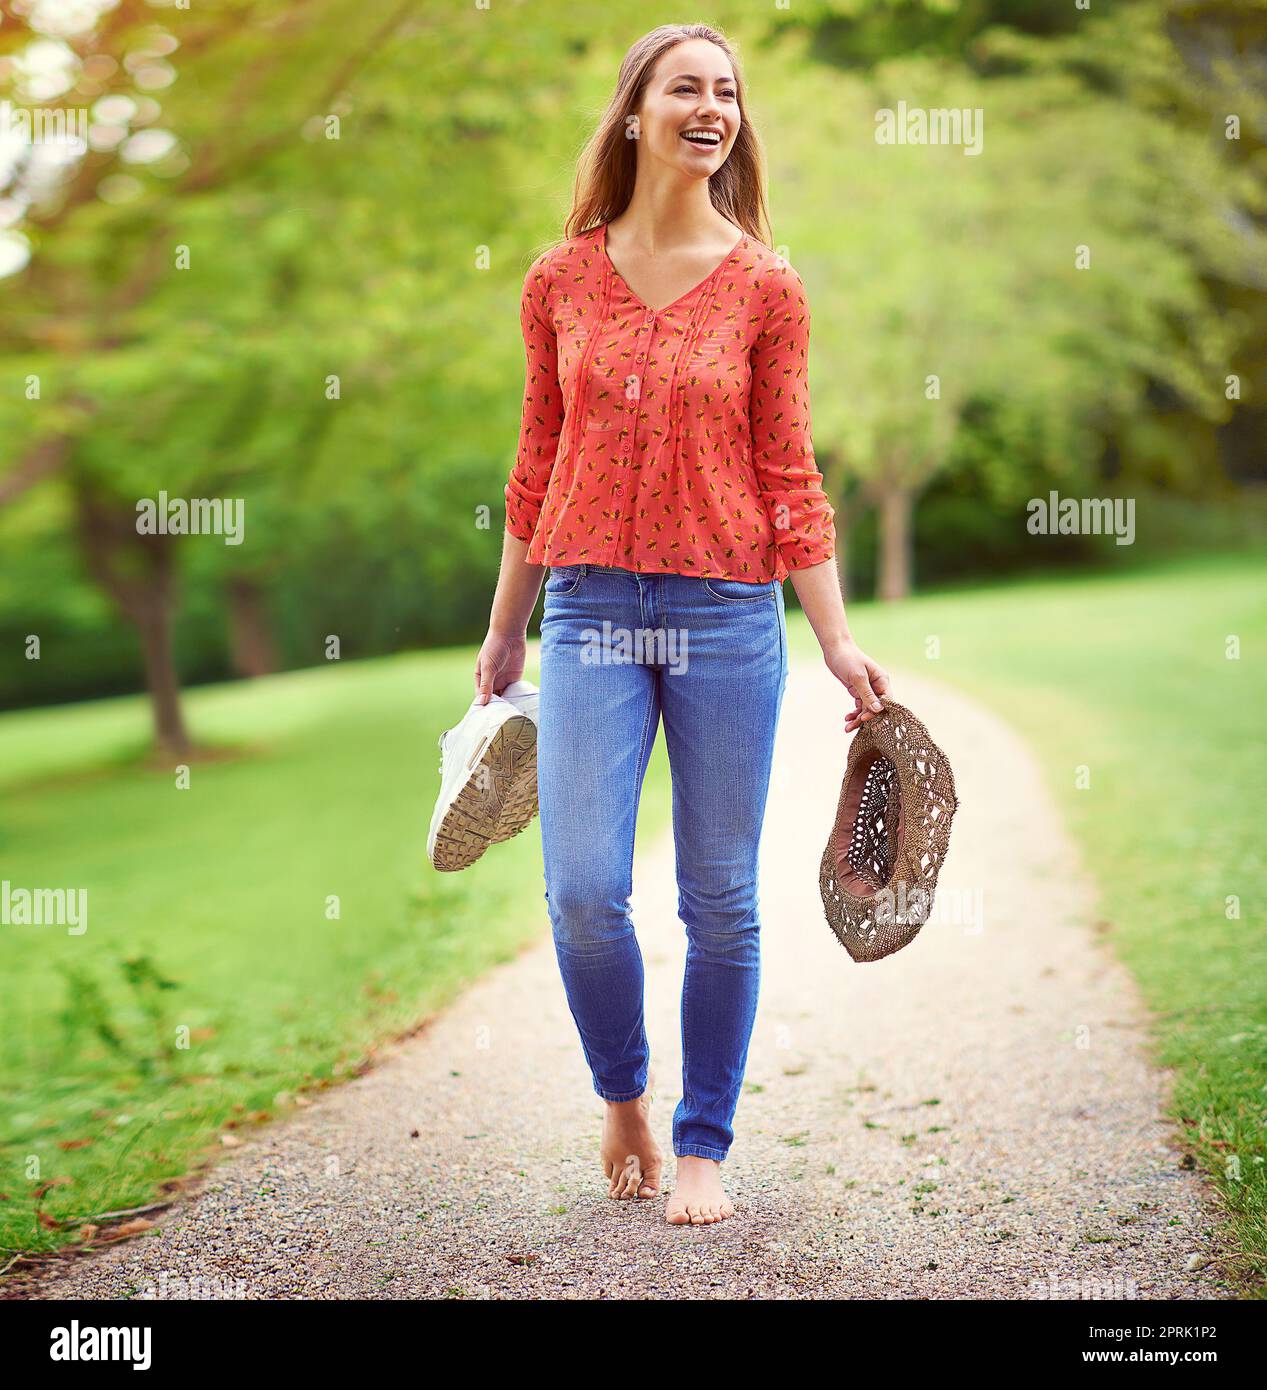 Una di quelle giornate estive spensierate... una giovane donna che cammina in un parco con le scarpe e un cappello. Foto Stock